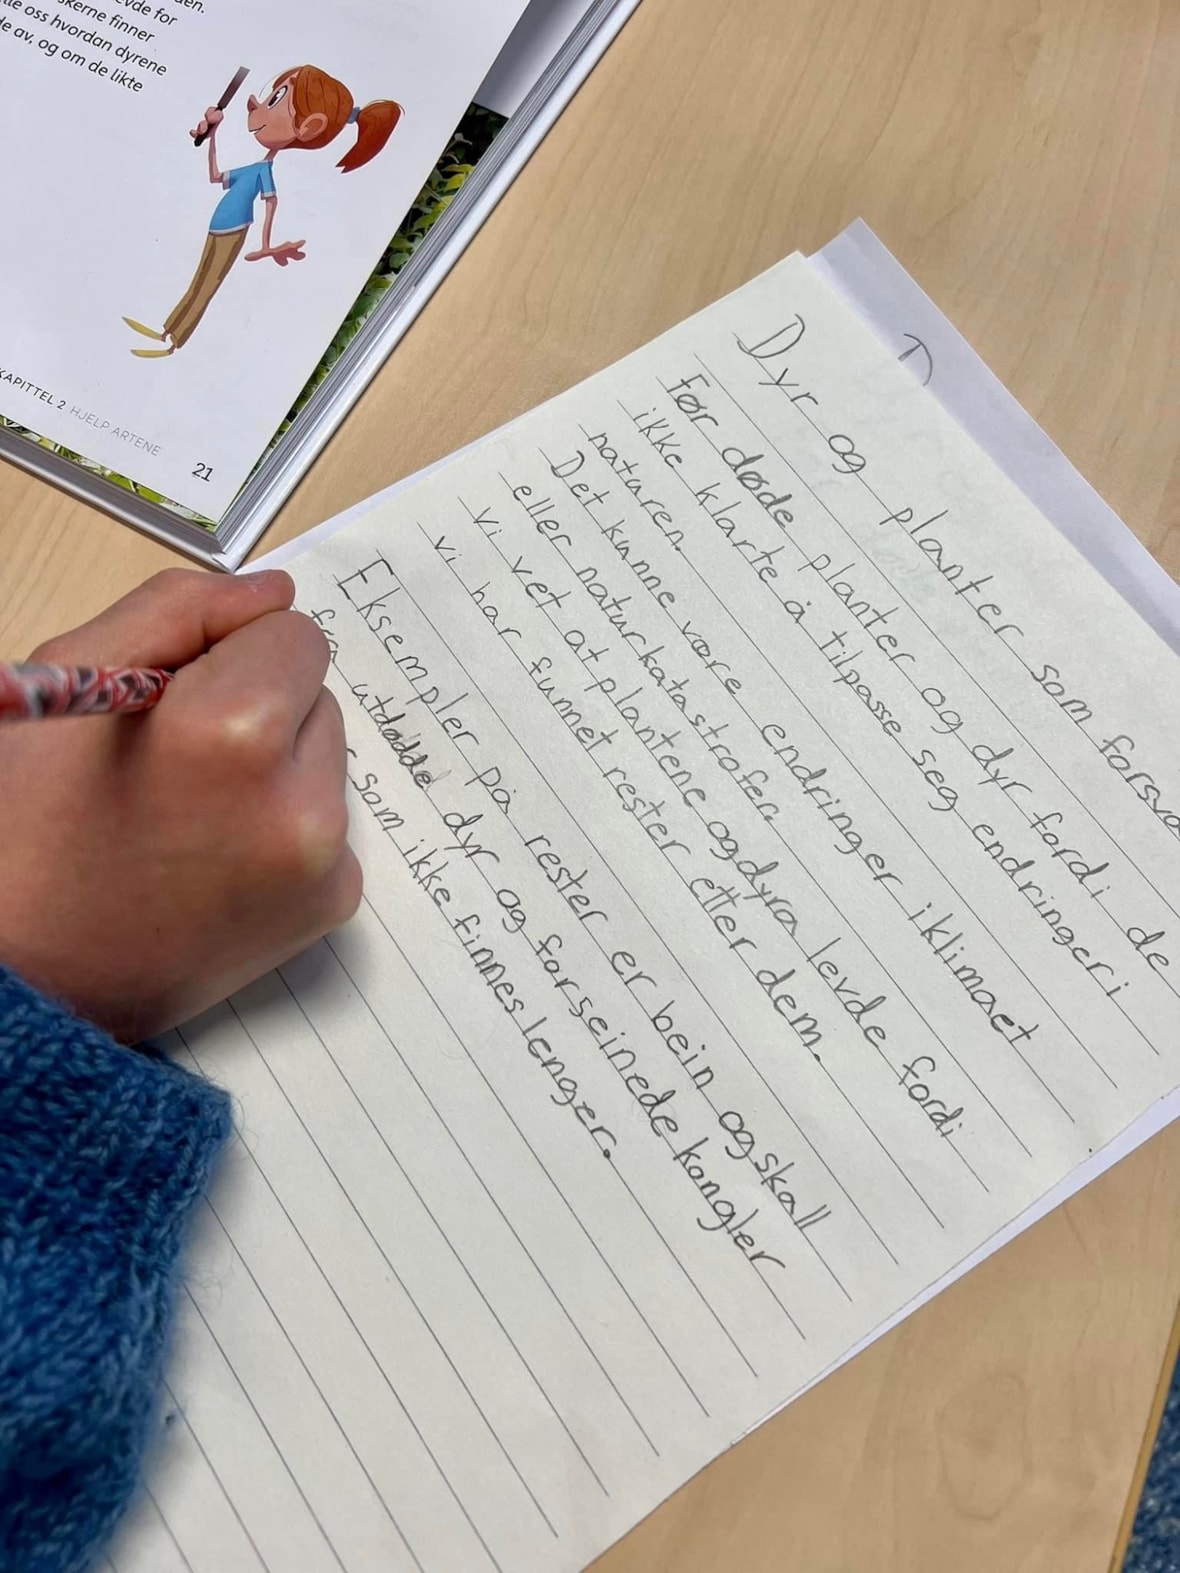 Et bilde som viser at en elev skriver tekst for hånd.